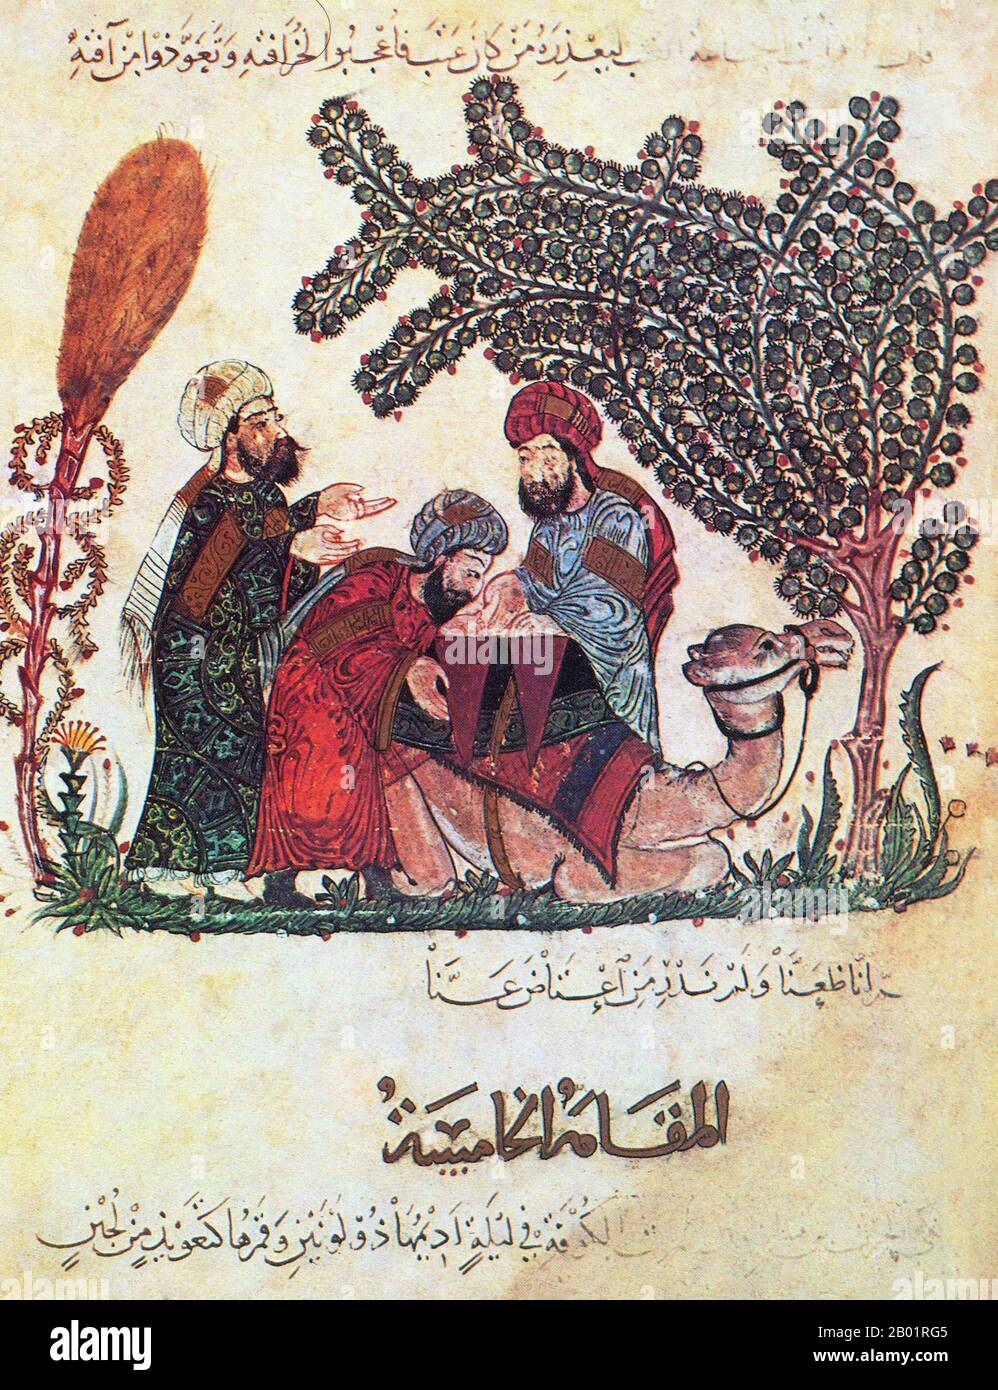 Iraq: Al Harith scopre un messaggio da Abu Zayd. Pittura in miniatura di Yahya ibn Mahmud al-Wasiti, 1237 d.C. Yahyâ ibn Mahmûd al-Wâsitî è stato un artista arabo islamico del XIII secolo. Al-Wasiti è nato a Wasit, nel sud dell'Iraq. Era noto per le sue illustrazioni del Maqam di al-Hariri. I Maqāma (letteralmente "assemblee") sono un genere letterario arabo (originariamente) di prosa rimata con intervalli di poesia in cui la stravaganza retorica è evidente. Si dice che l'autore del X secolo Badī' al-Zaman al-Hamadhāni abbia inventato la forma, che fu estesa da al-Hariri di Bassora nel secolo successivo. Foto Stock